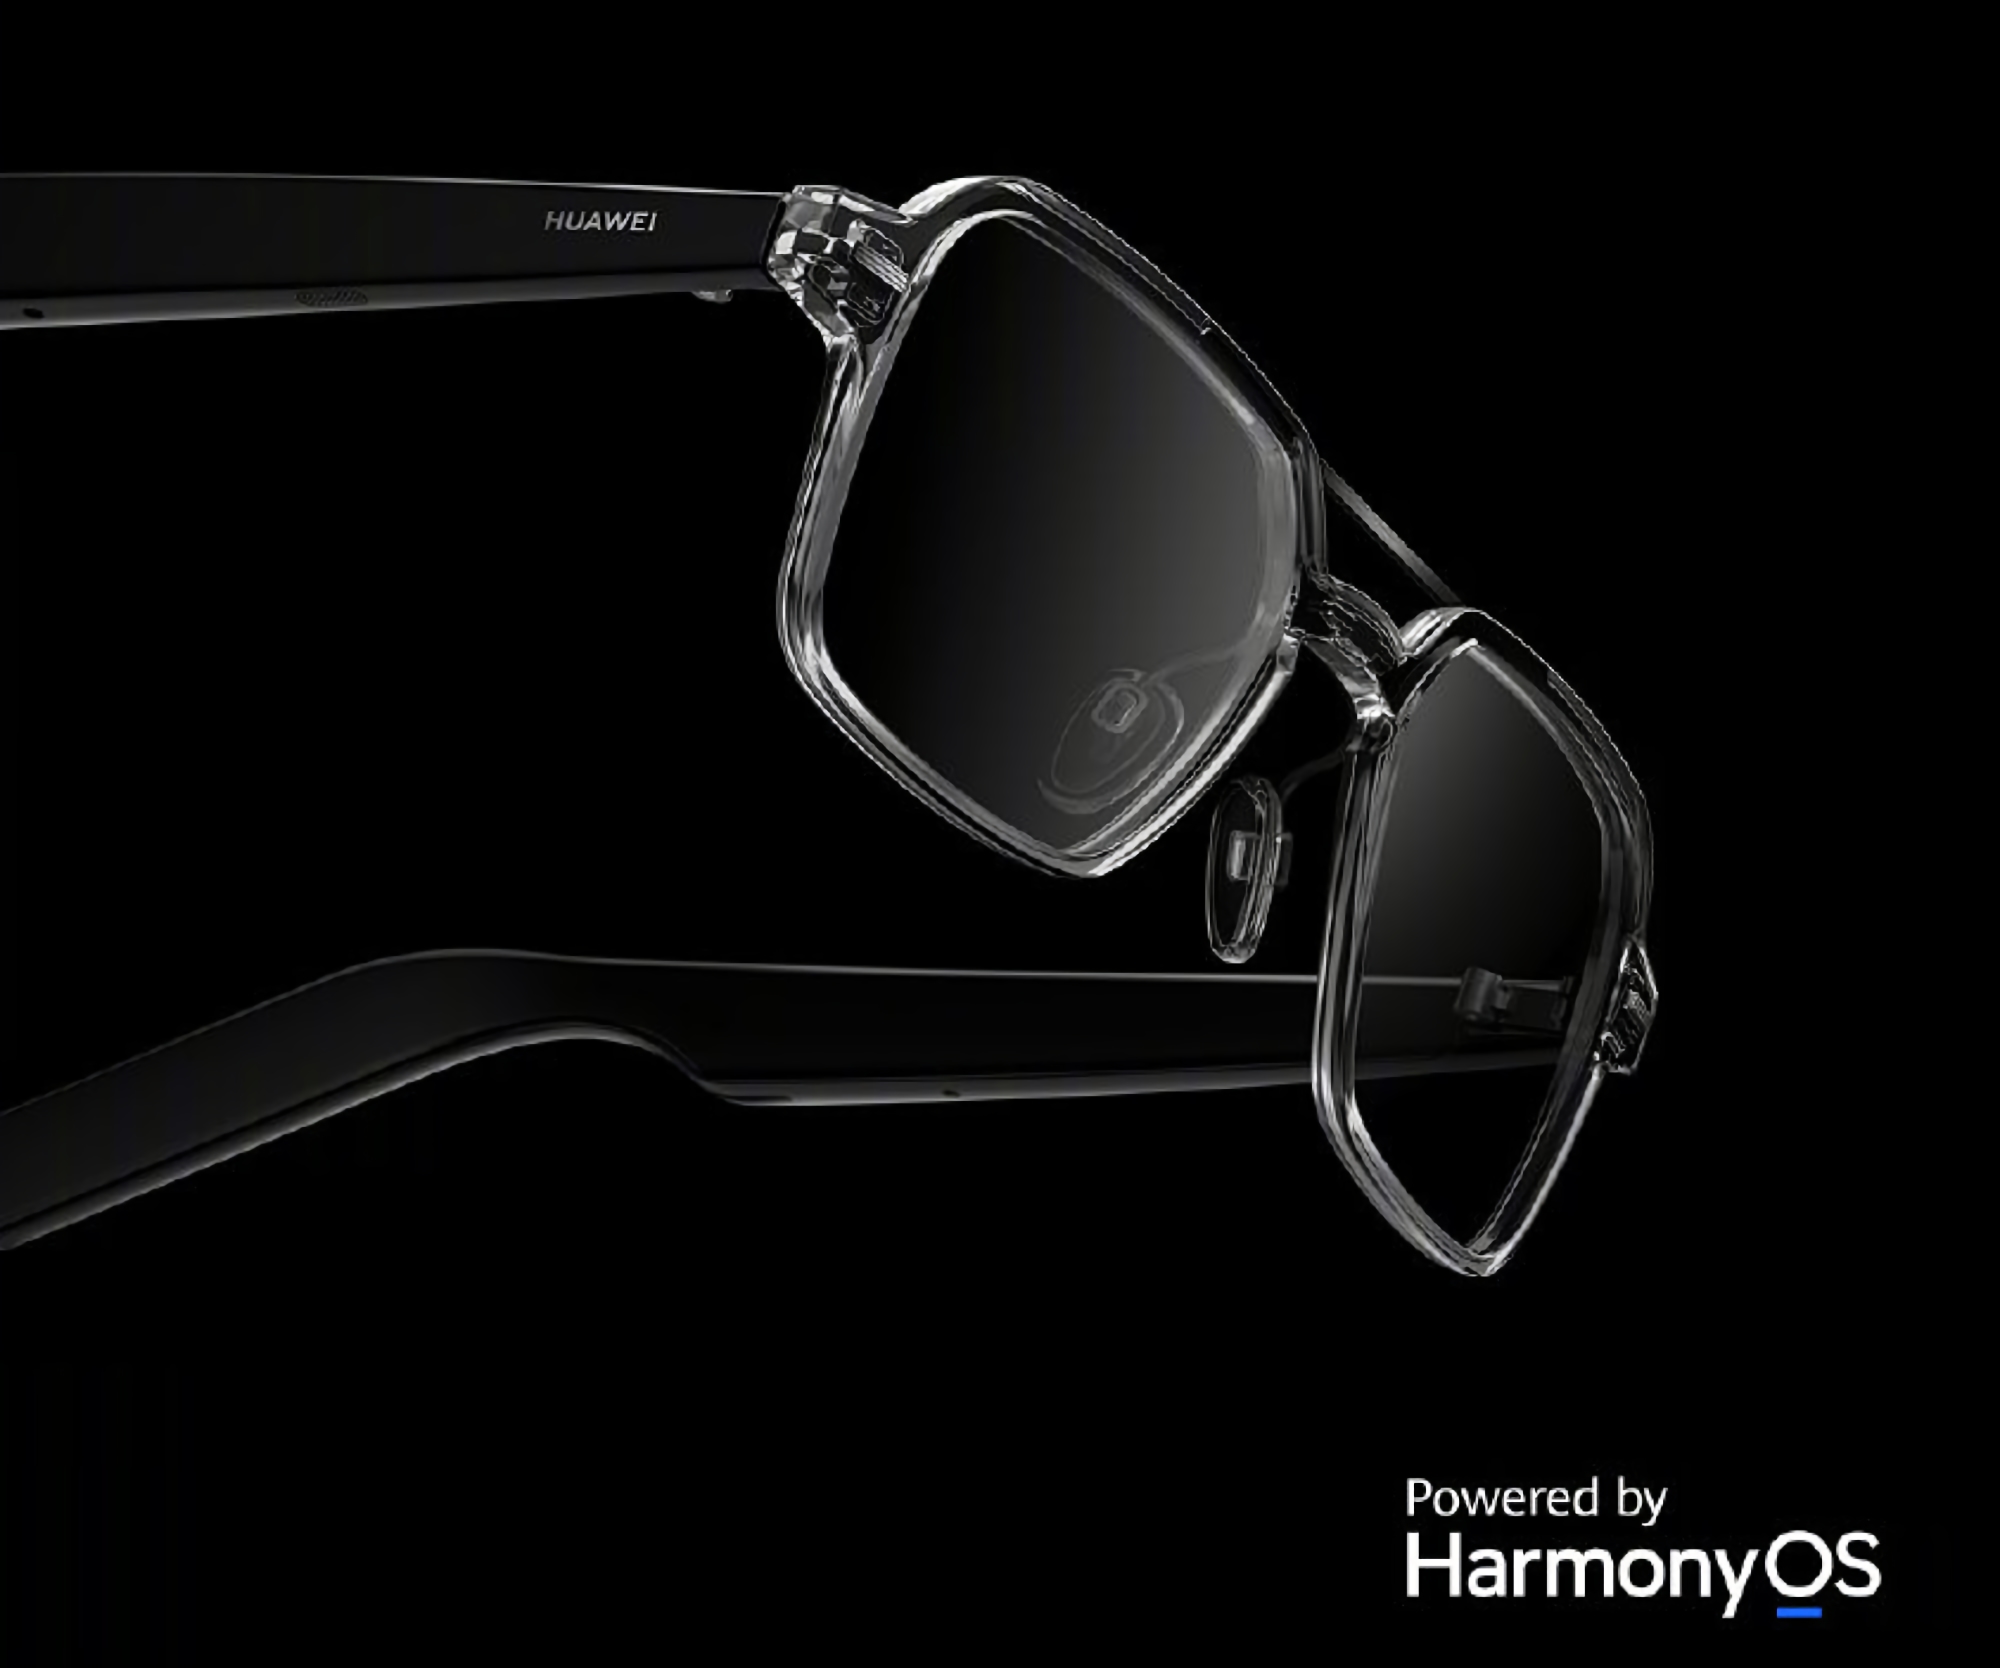 Huawei stellt neue Datenbrillen mit HarmonyOS an Bord, IPX4-Schutz, integrierten Lautsprechern und einer Autonomie von bis zu 16 Stunden vor